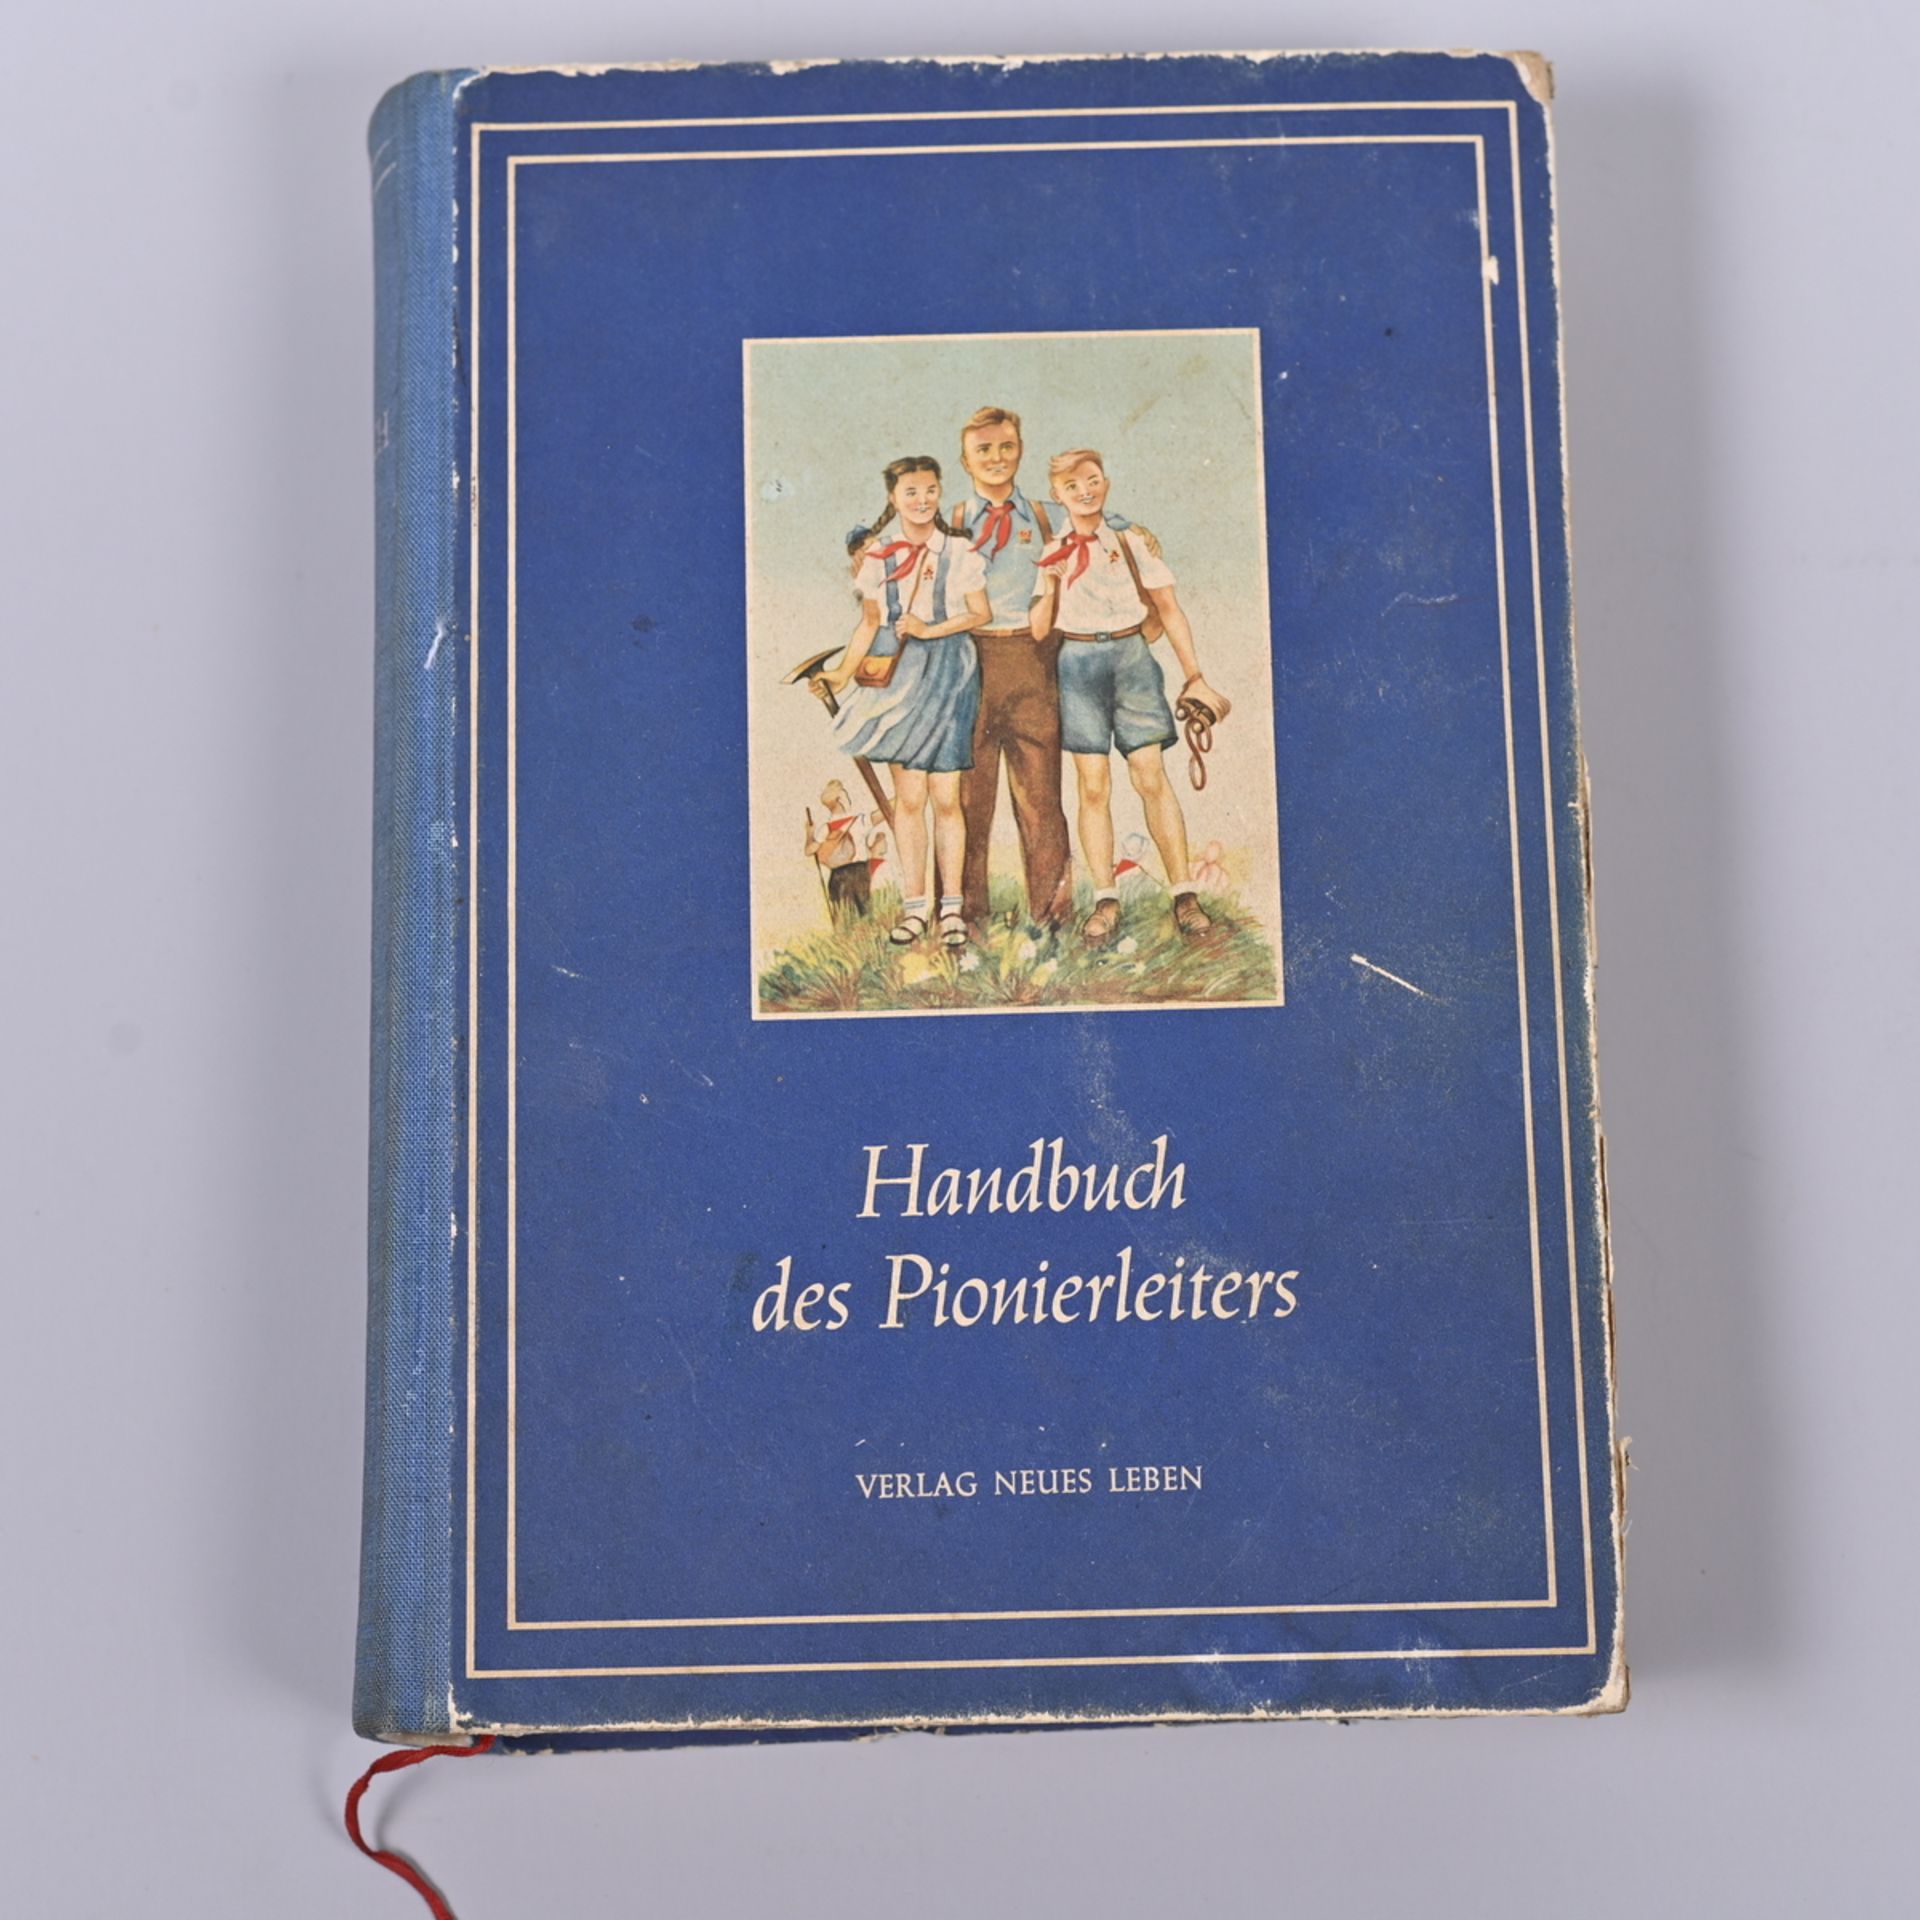 "Handbuch des Pionierleiters", Verlag Neues Leben Berlin 1952, sehr guter Zustand